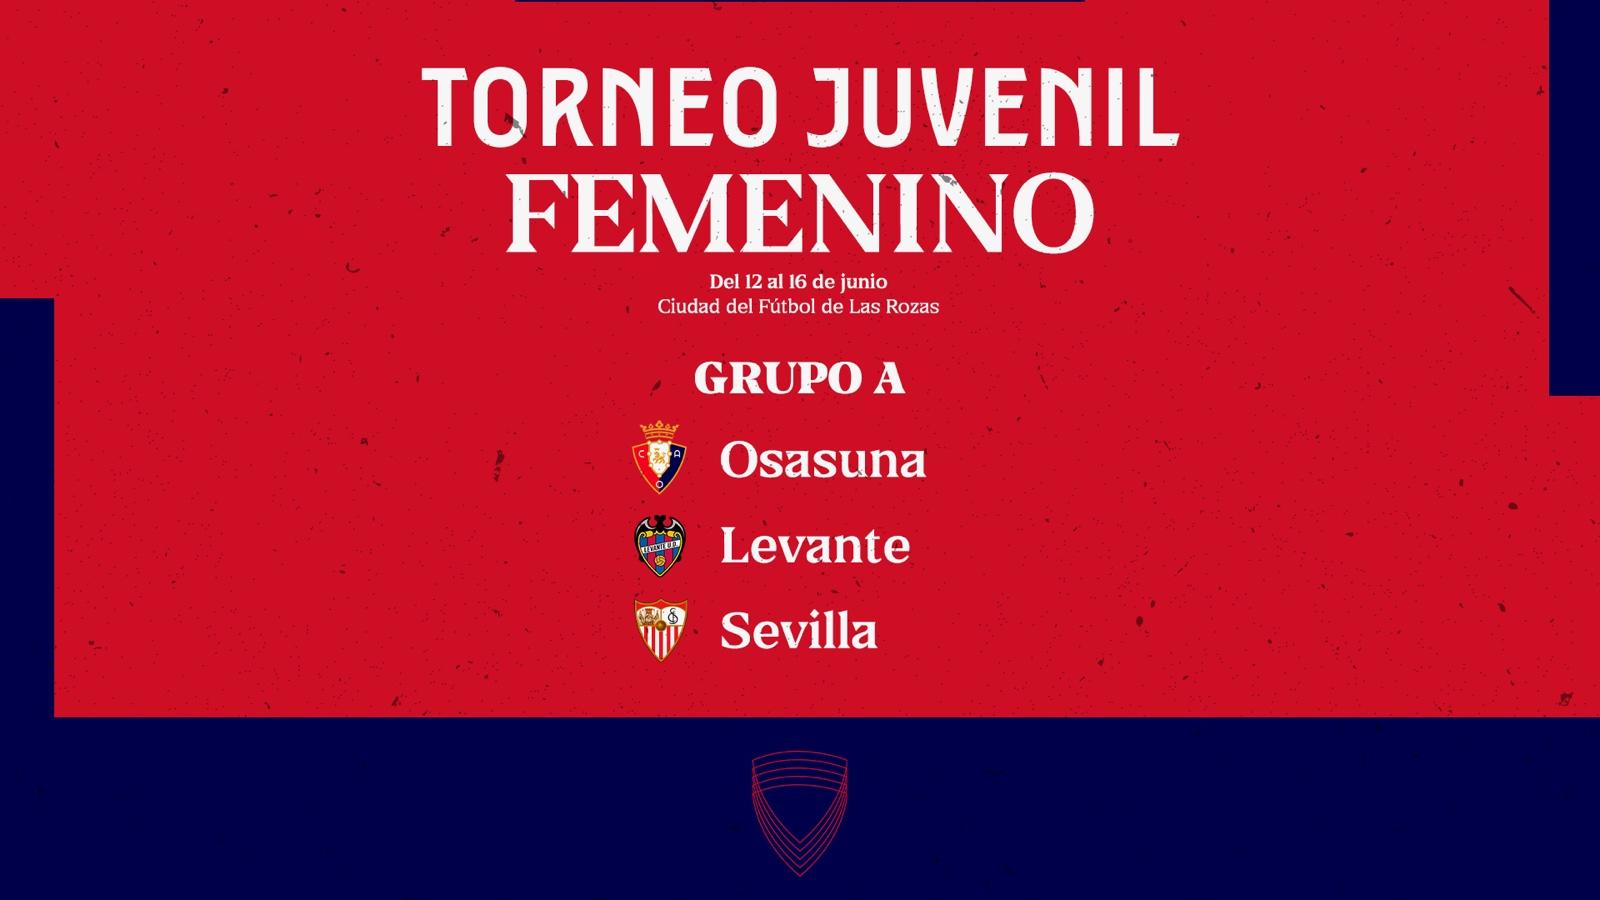 Osasuna Femenino participará en el Torneo Juvenil Femenino de la RFEF